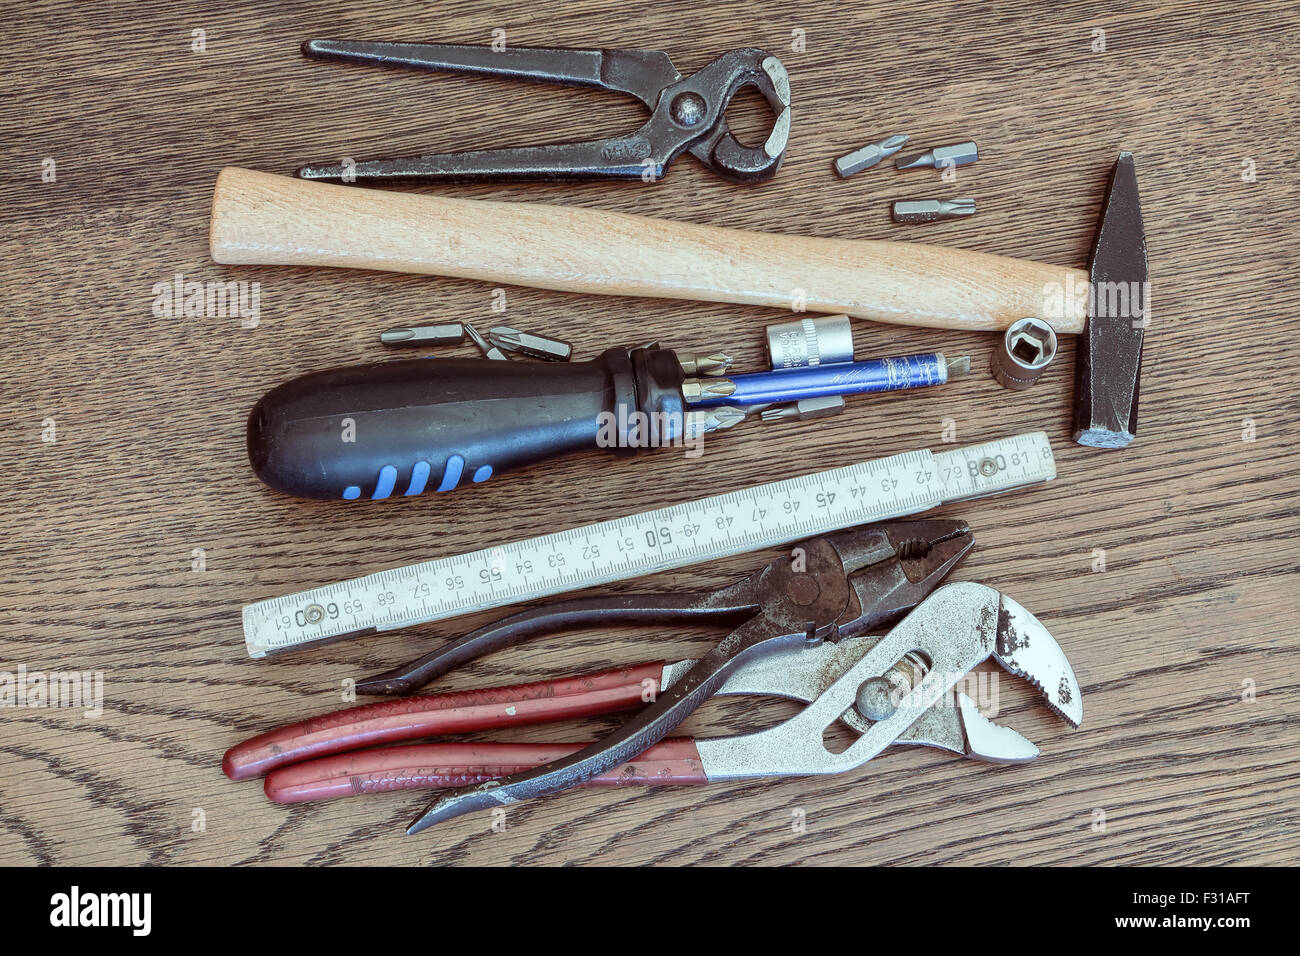 Alte Werkzeuge auf Holztisch. Konzept der Reparatur, Wartung, Instandhaltung oder Reinigung. Alte Vintage-Look. Stockfoto